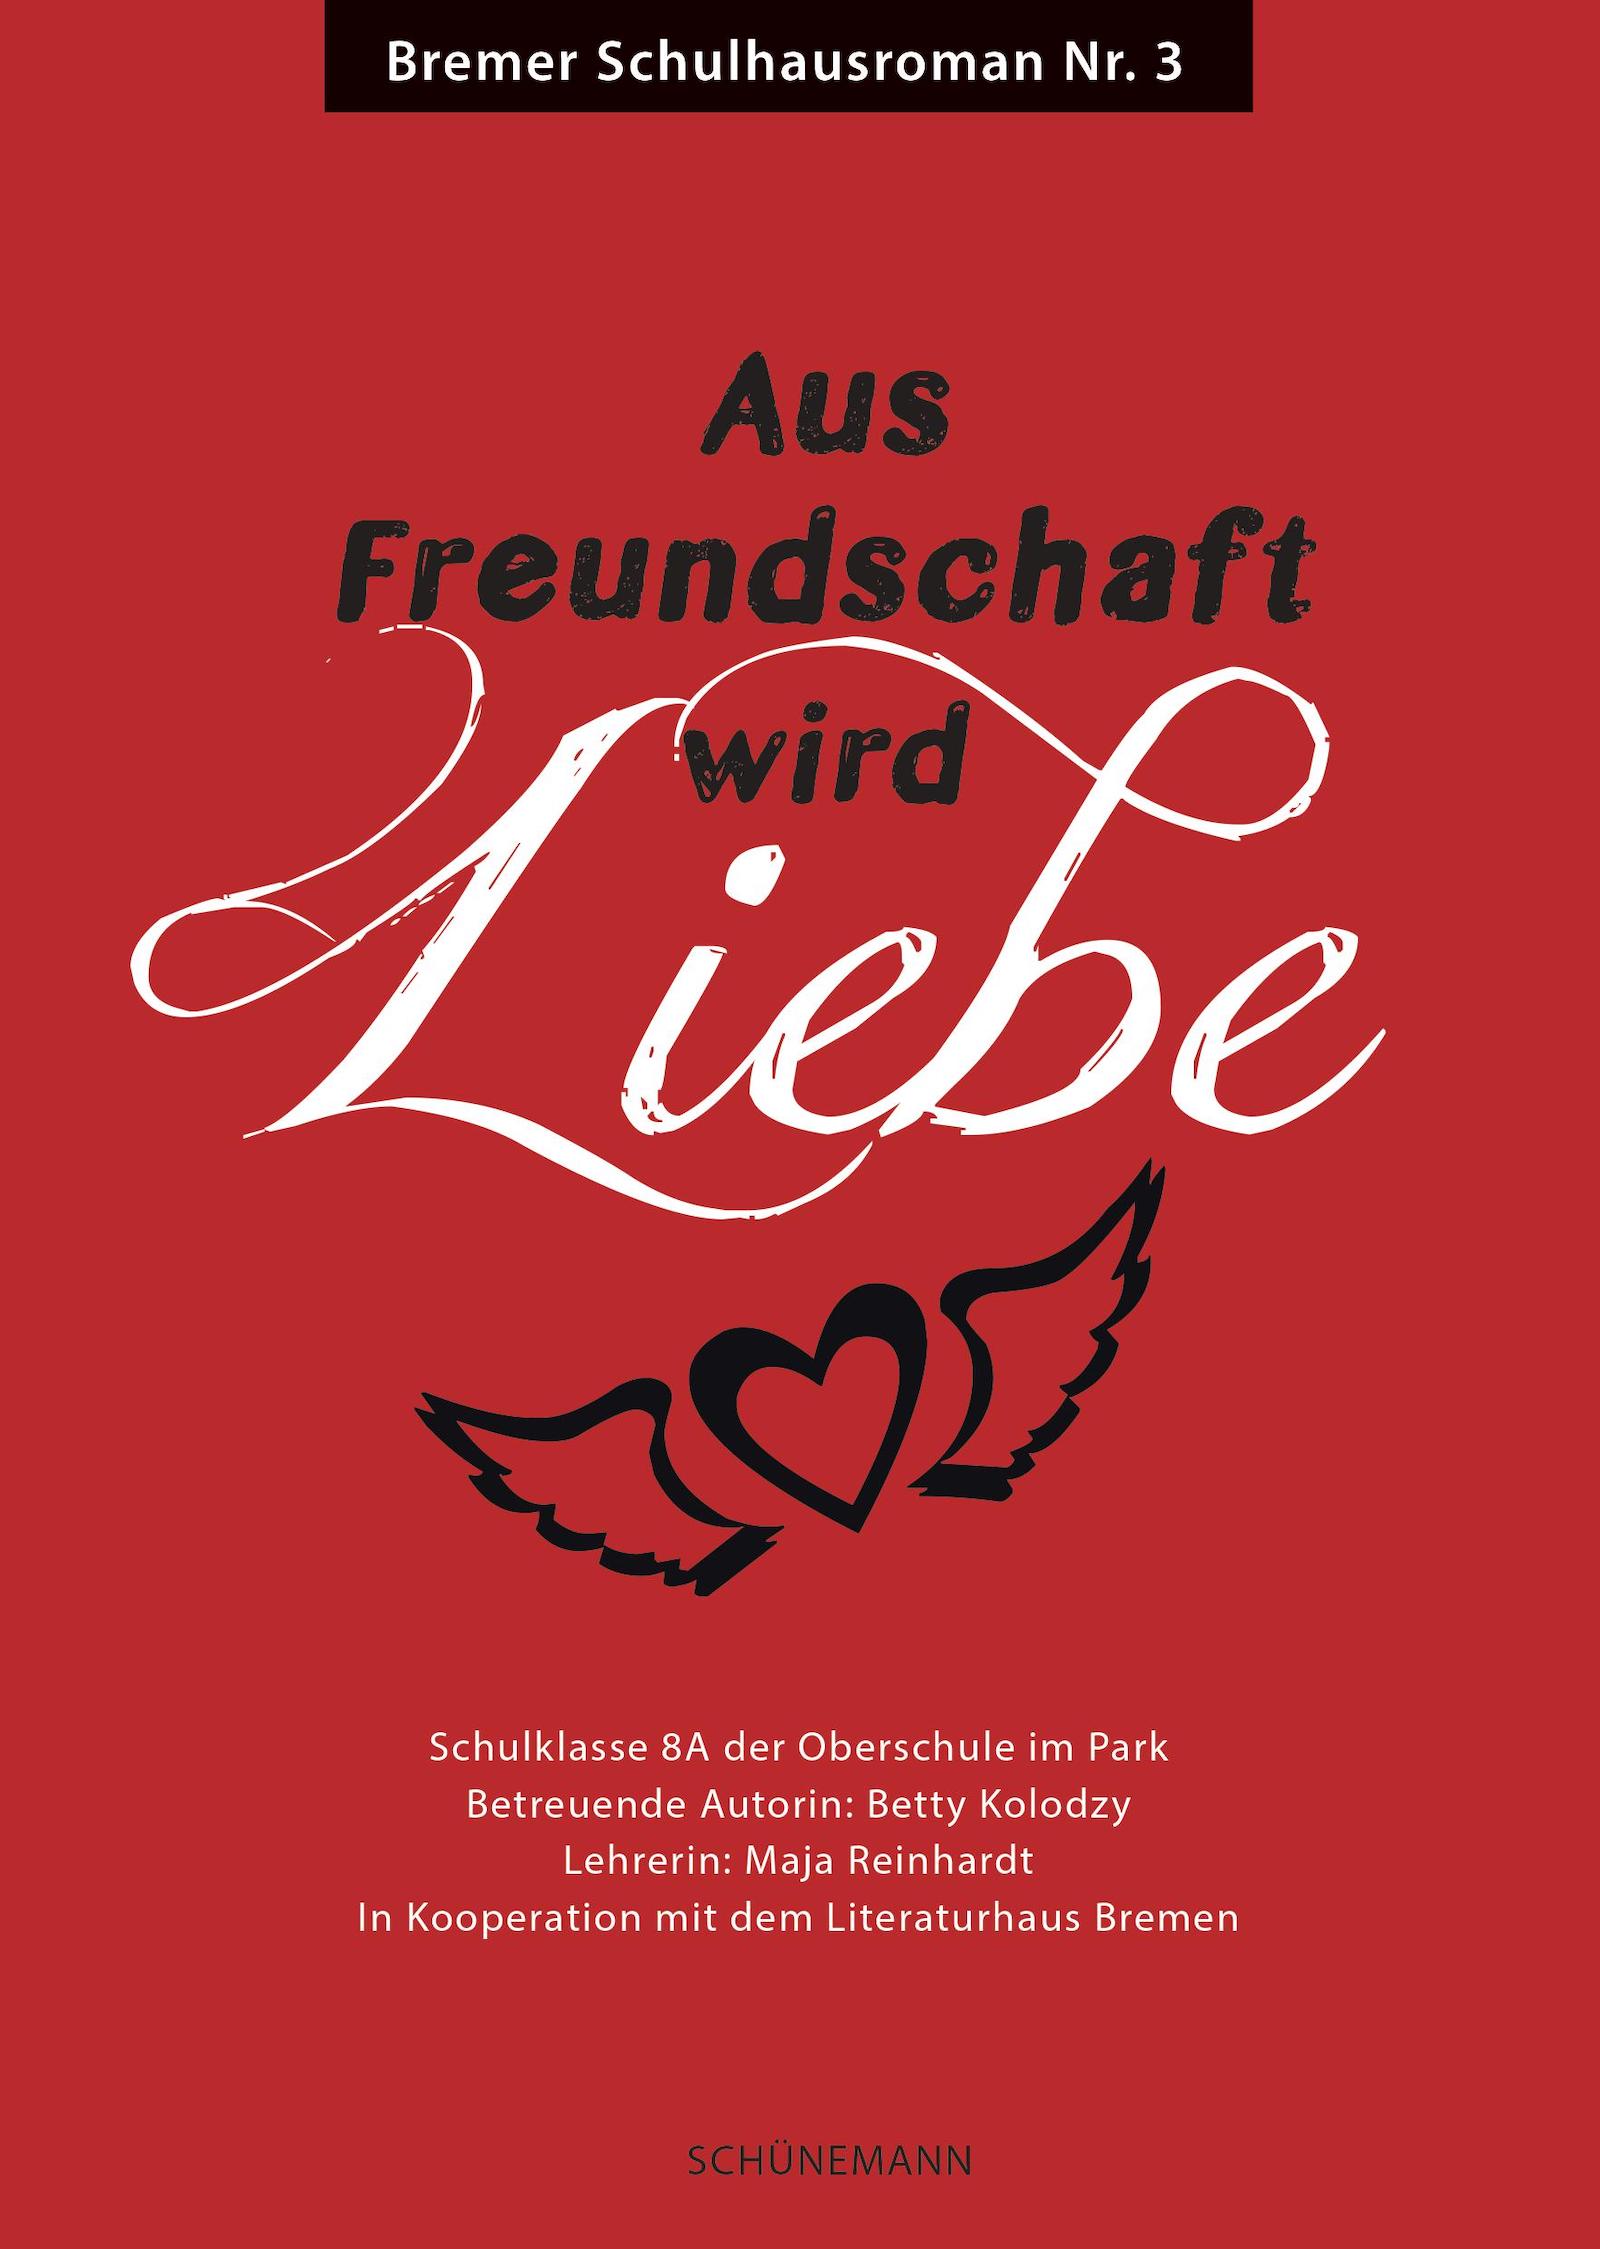 Cover des Schulhausromans "Aus Freundschaft wird Liebe"